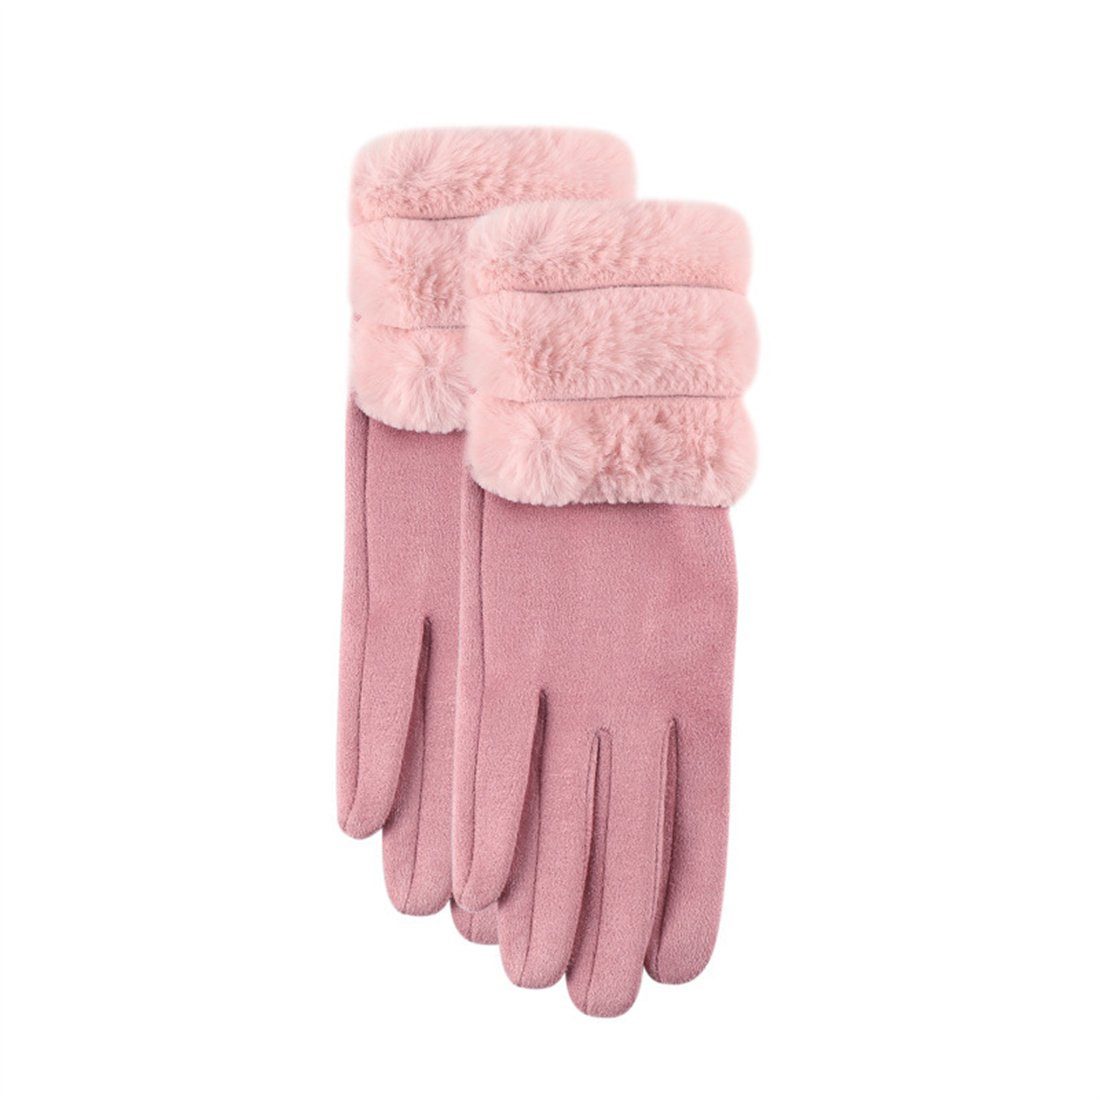 DÖRÖY Fleecehandschuhe Damenmode Verdickter Plüsch Reiten Rosa Handschuhe Warme Handschuhe